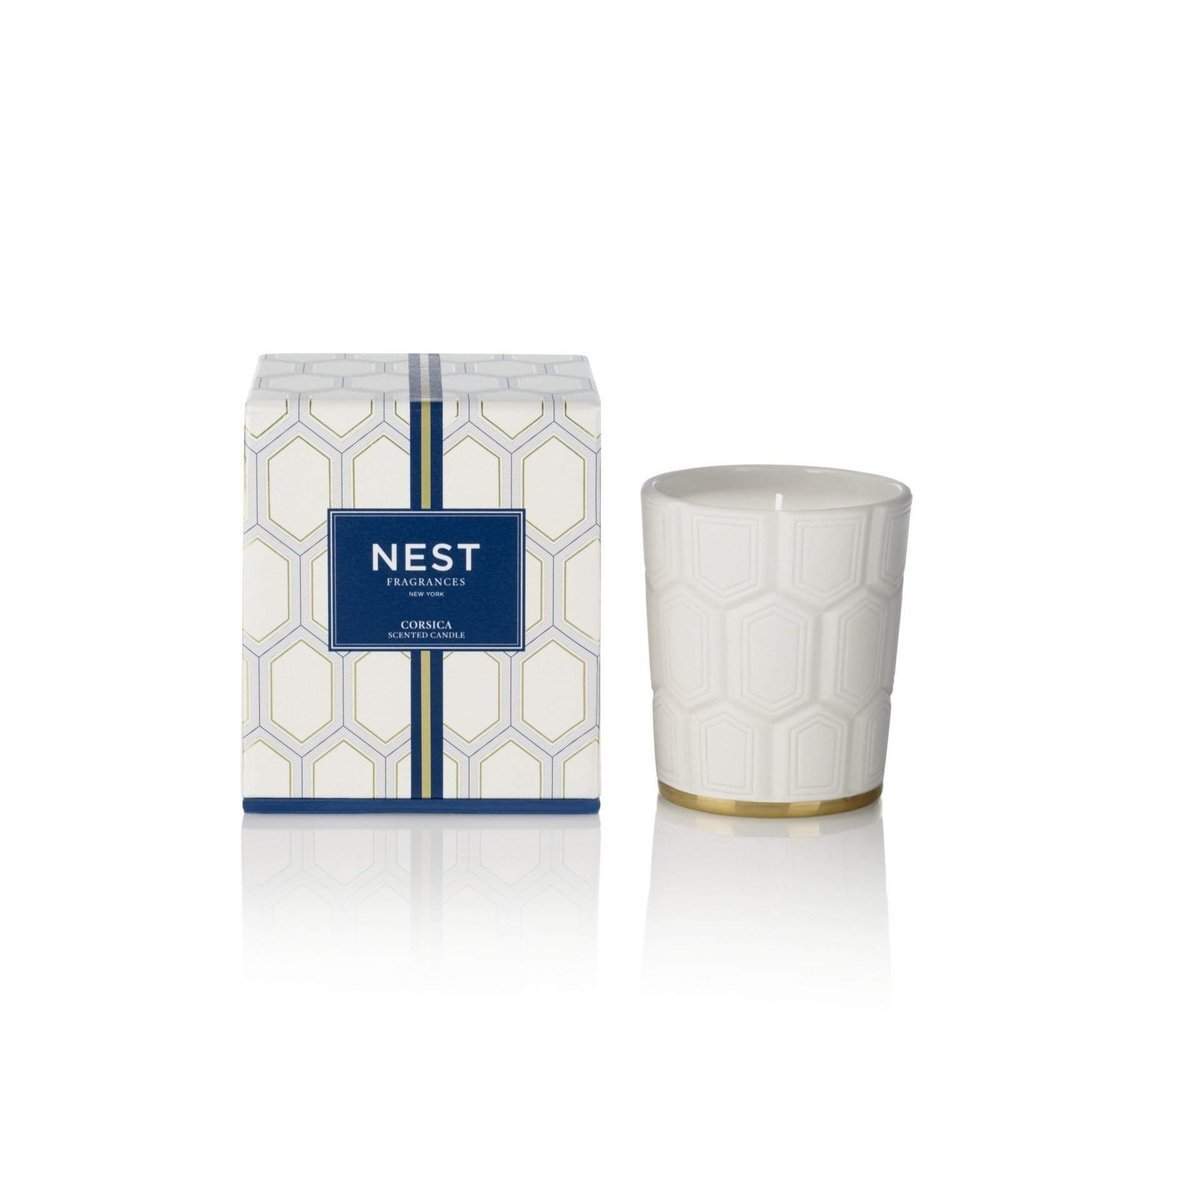 NEST Fragrances Classic Candle 8.1 oz-Nest Fragrances-Oak Manor Fragrances